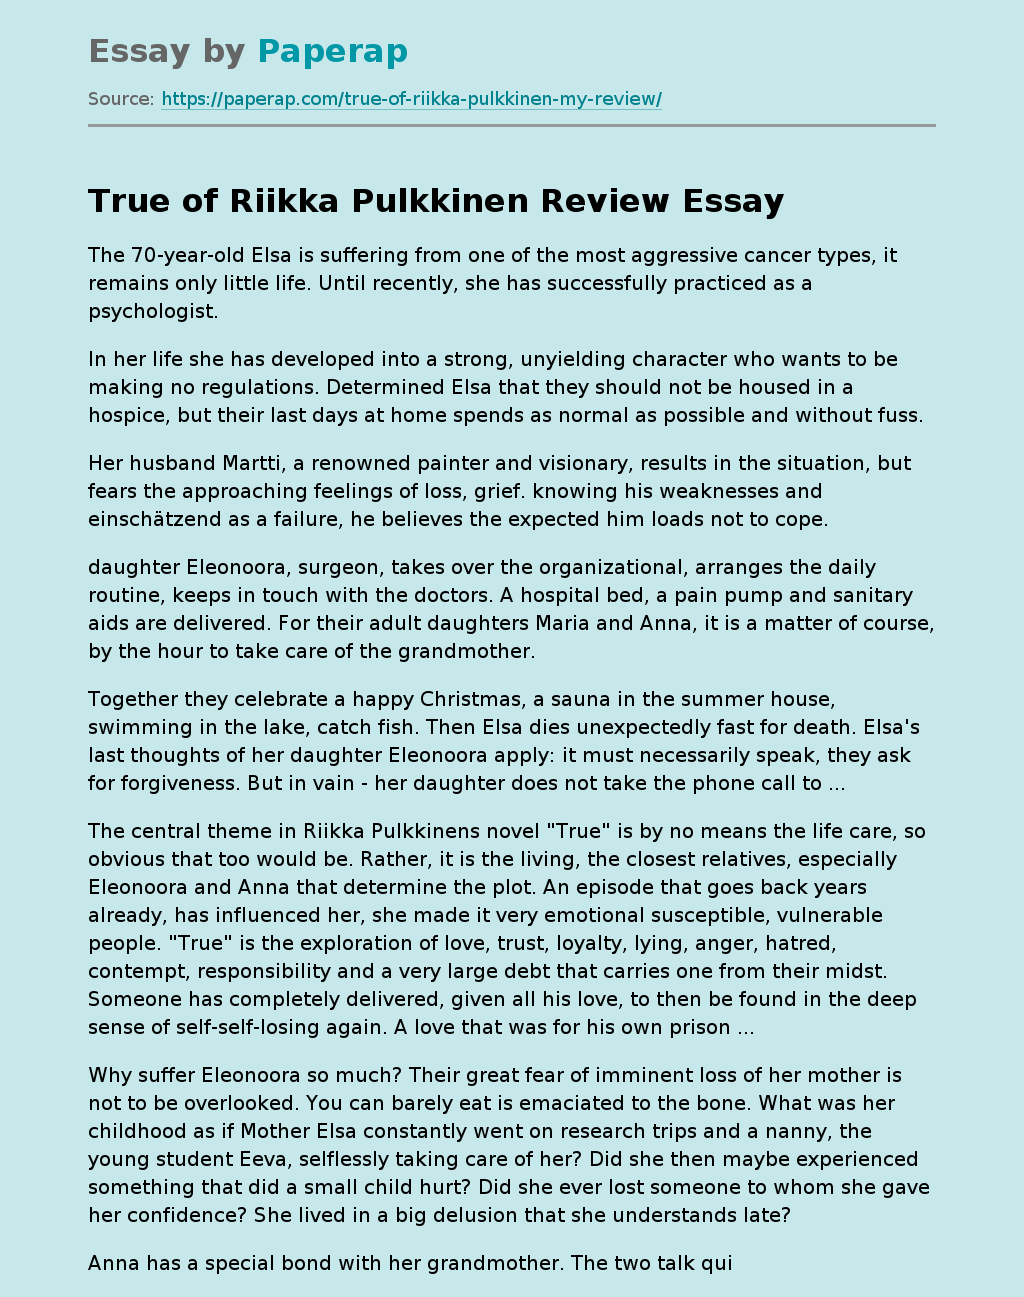 True of Riikka Pulkkinen Review